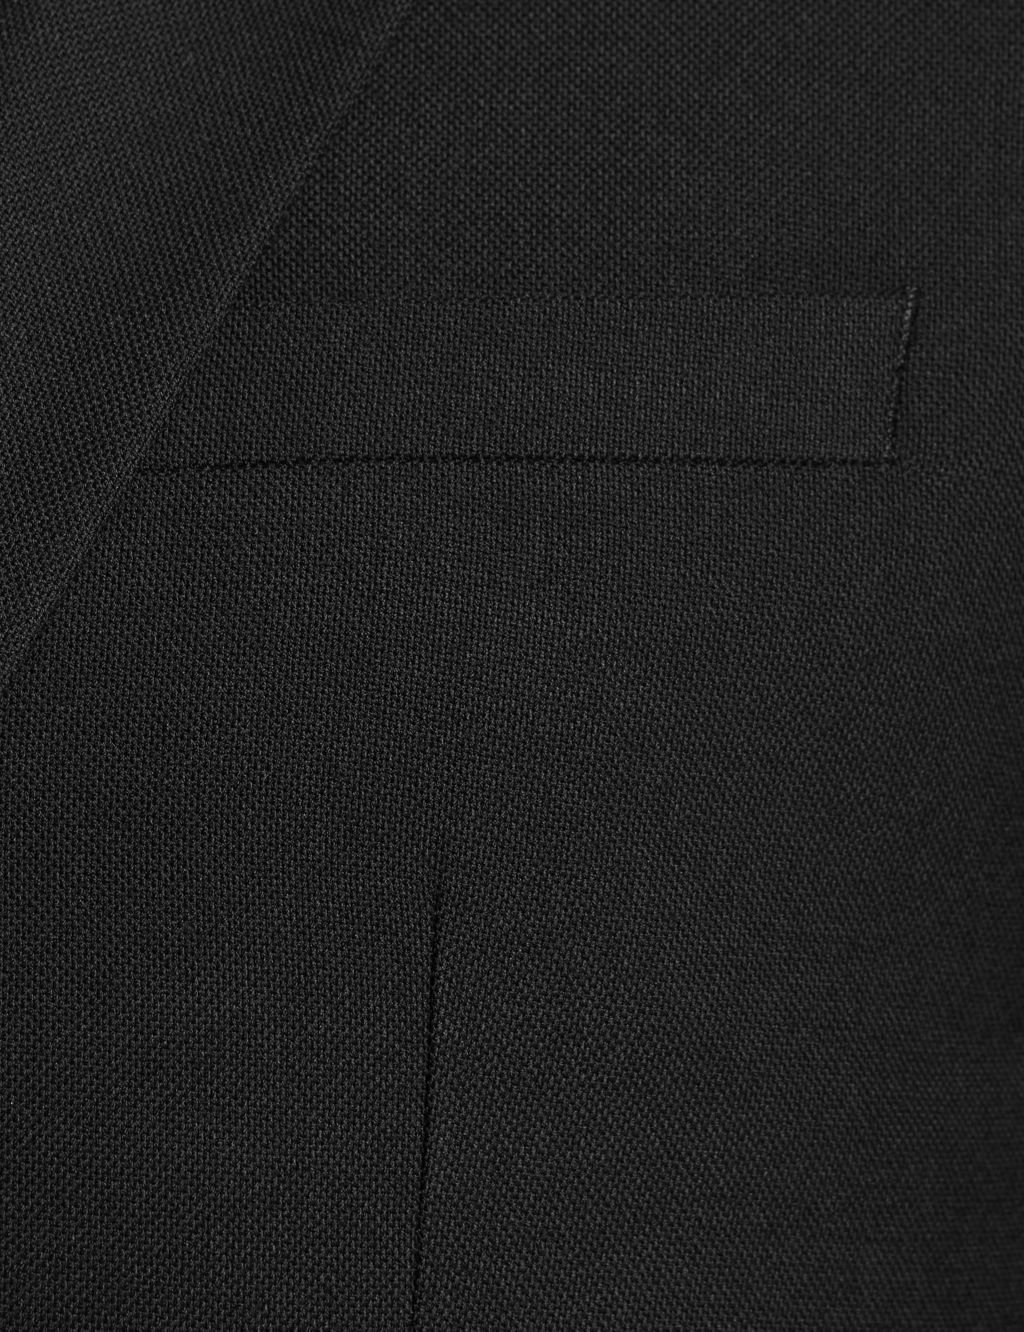 Black Slim Fit Jacket 5 of 8